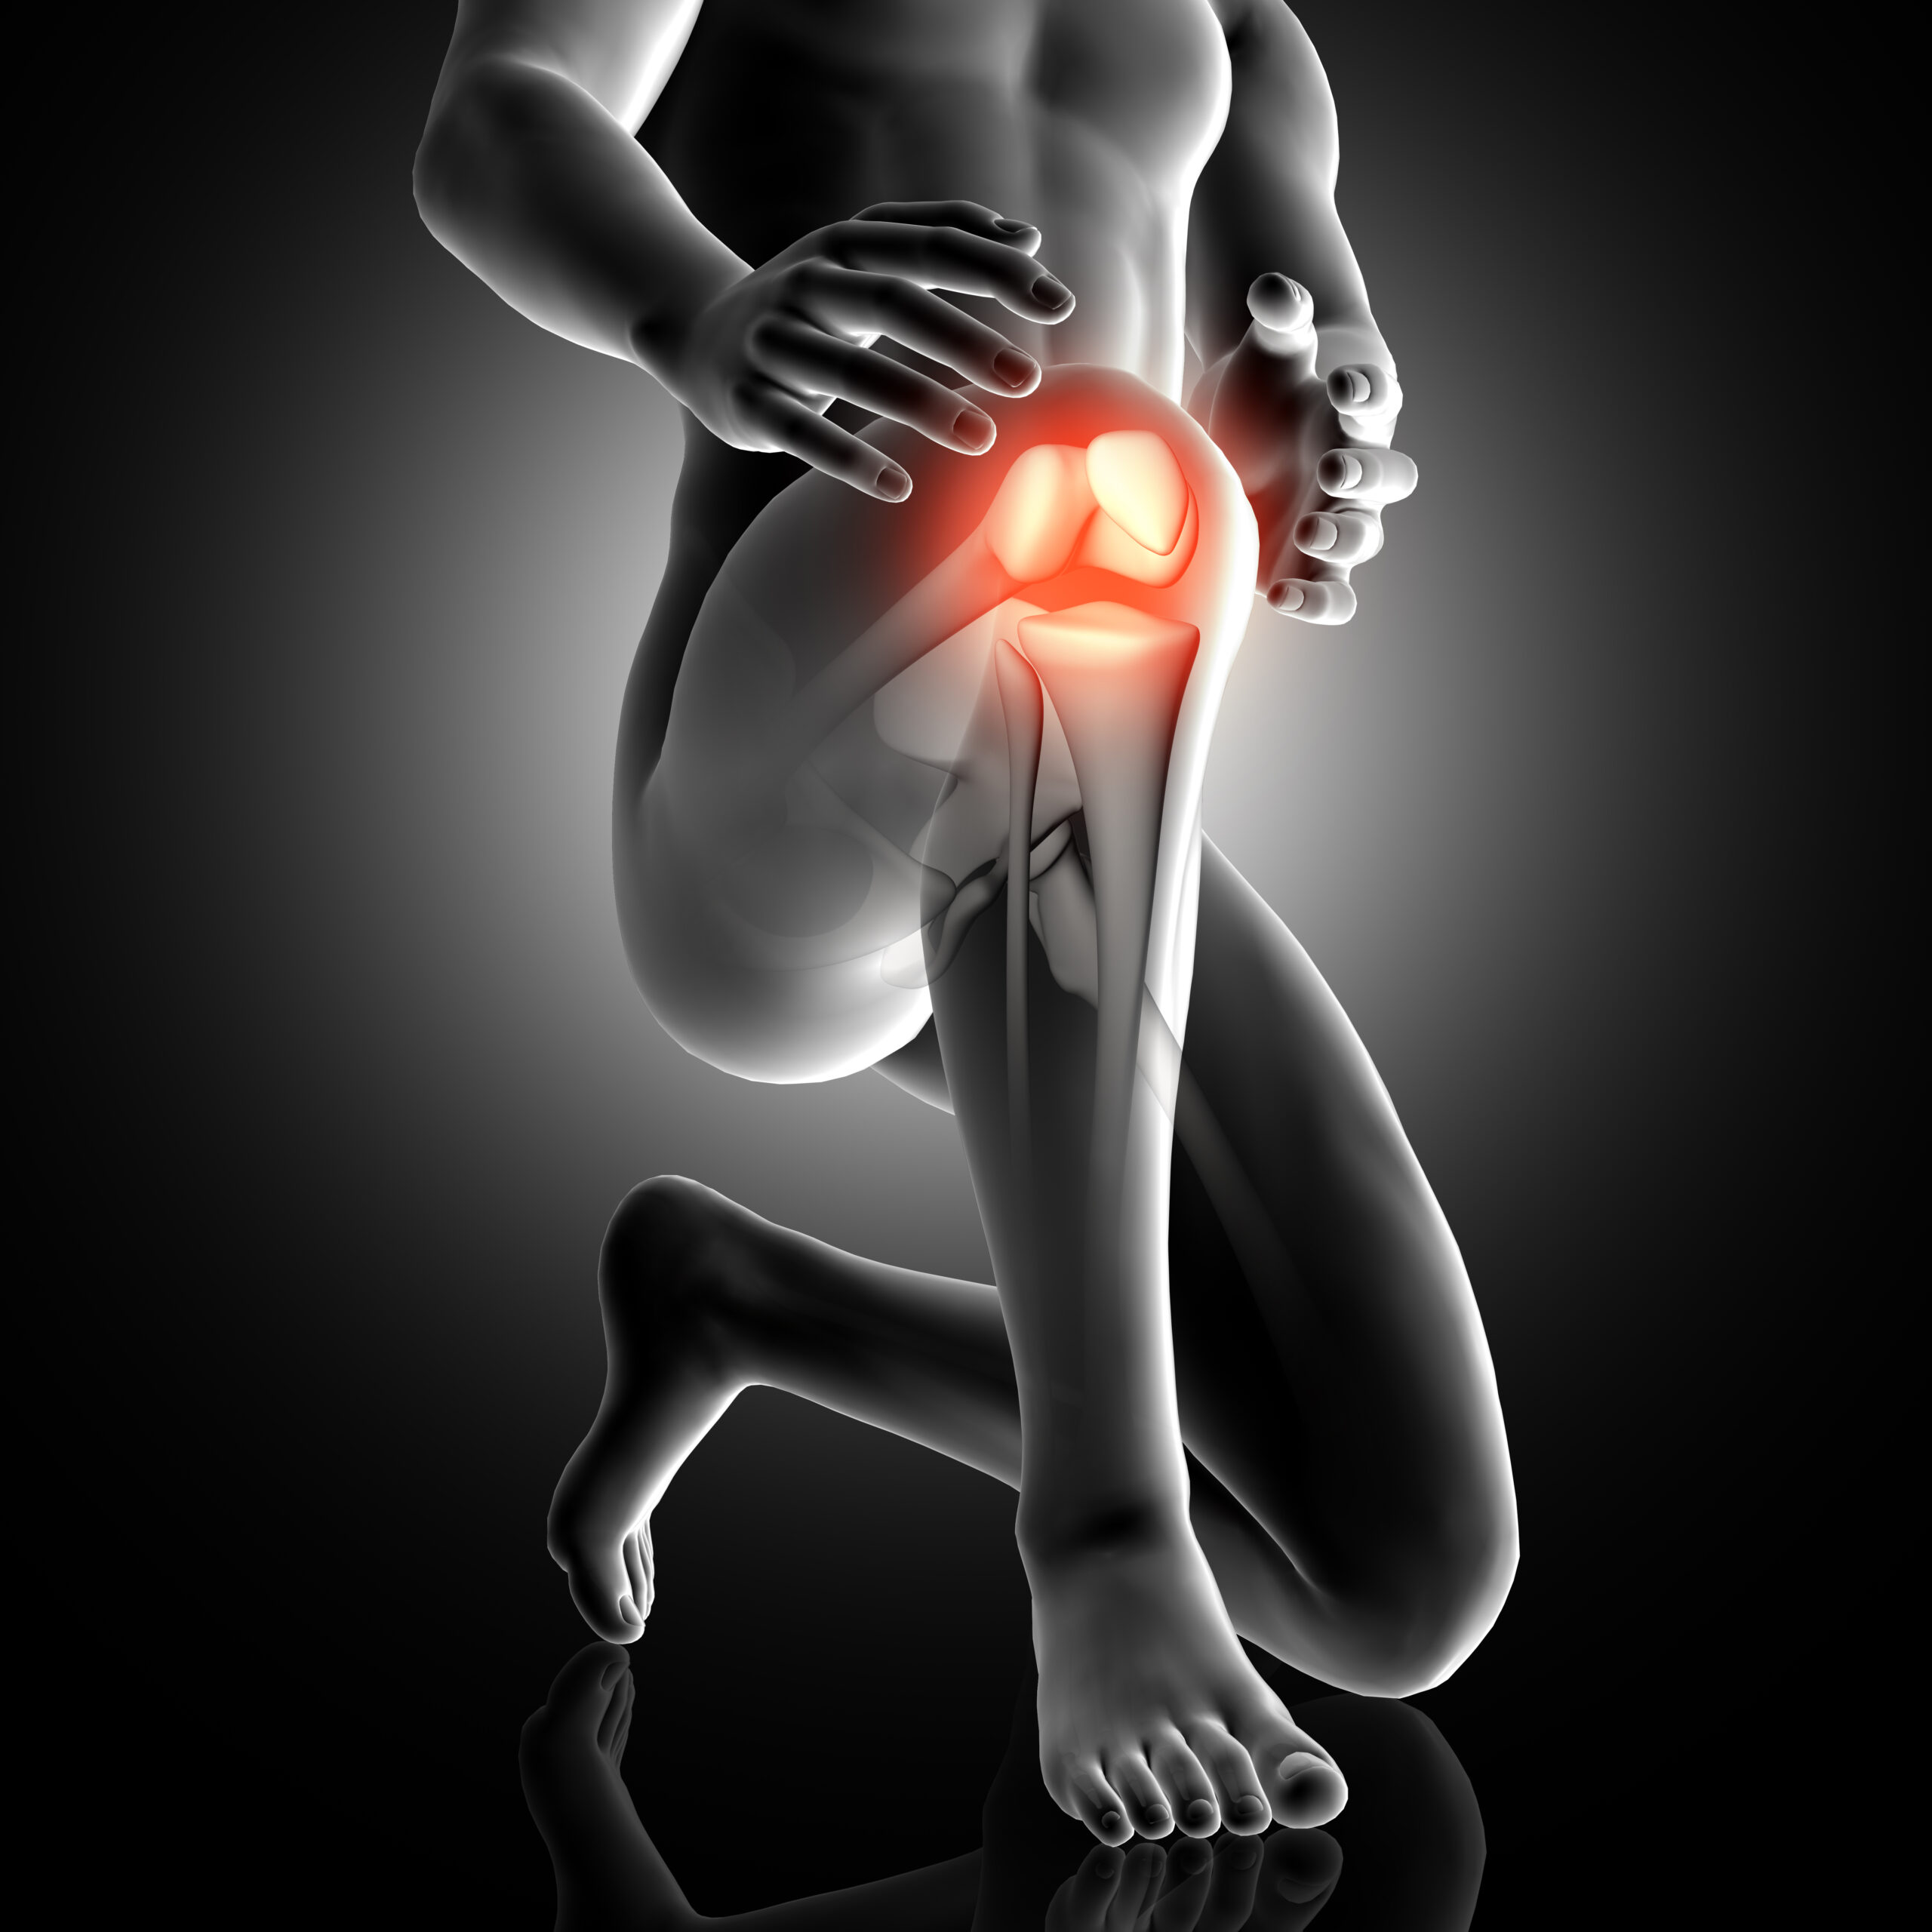 knee meniscus | meniscus injury | torn meniscus treatment | meniscus tear treatment